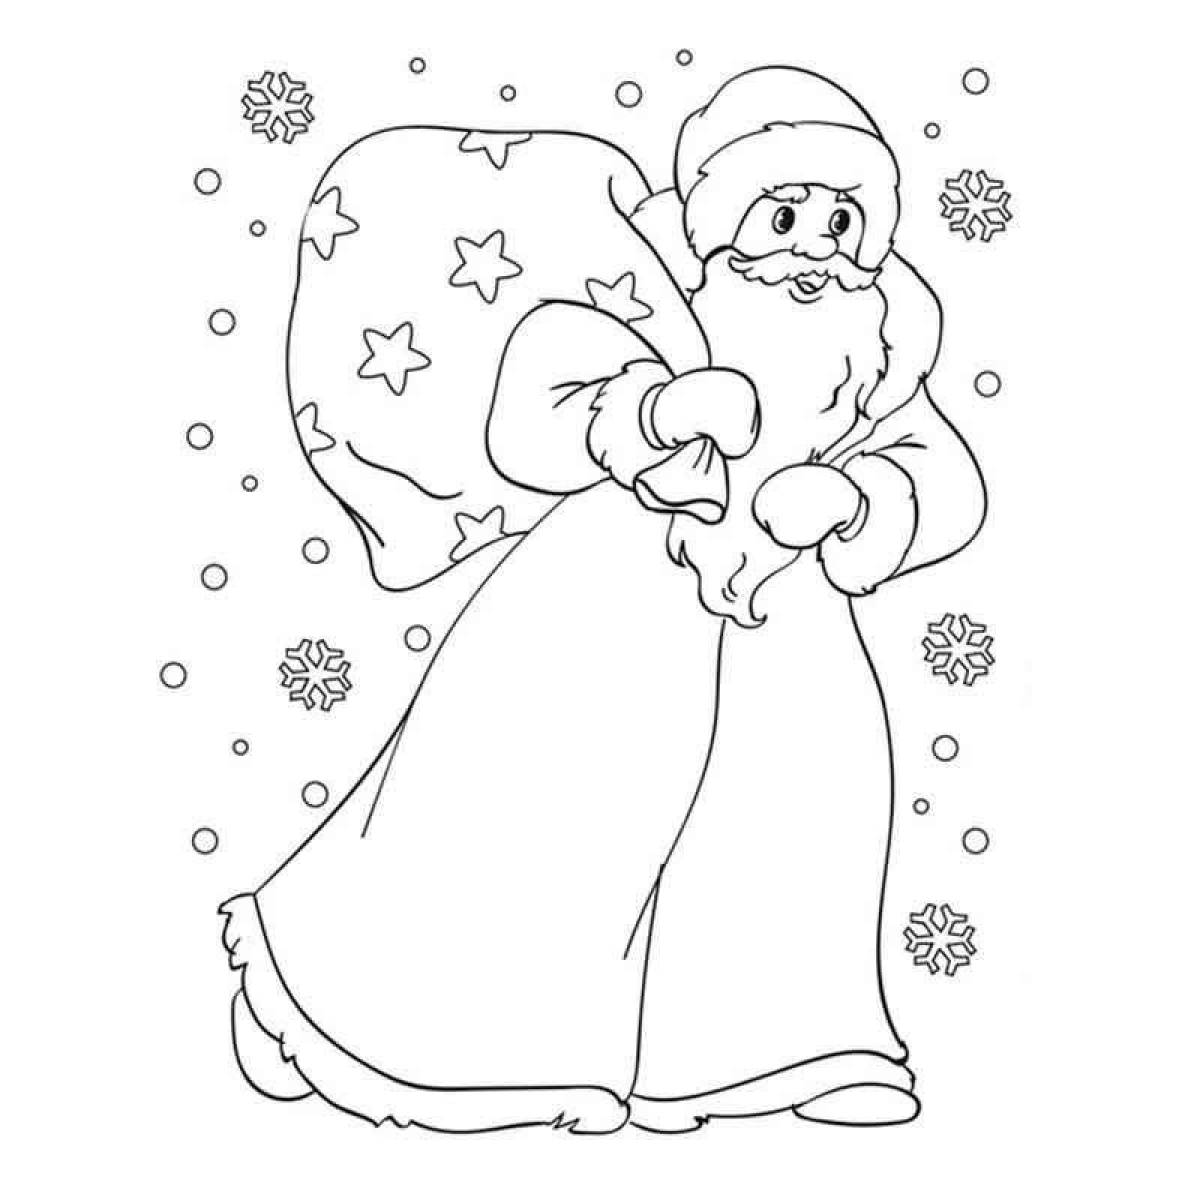 Exquisite snow maiden coloring book